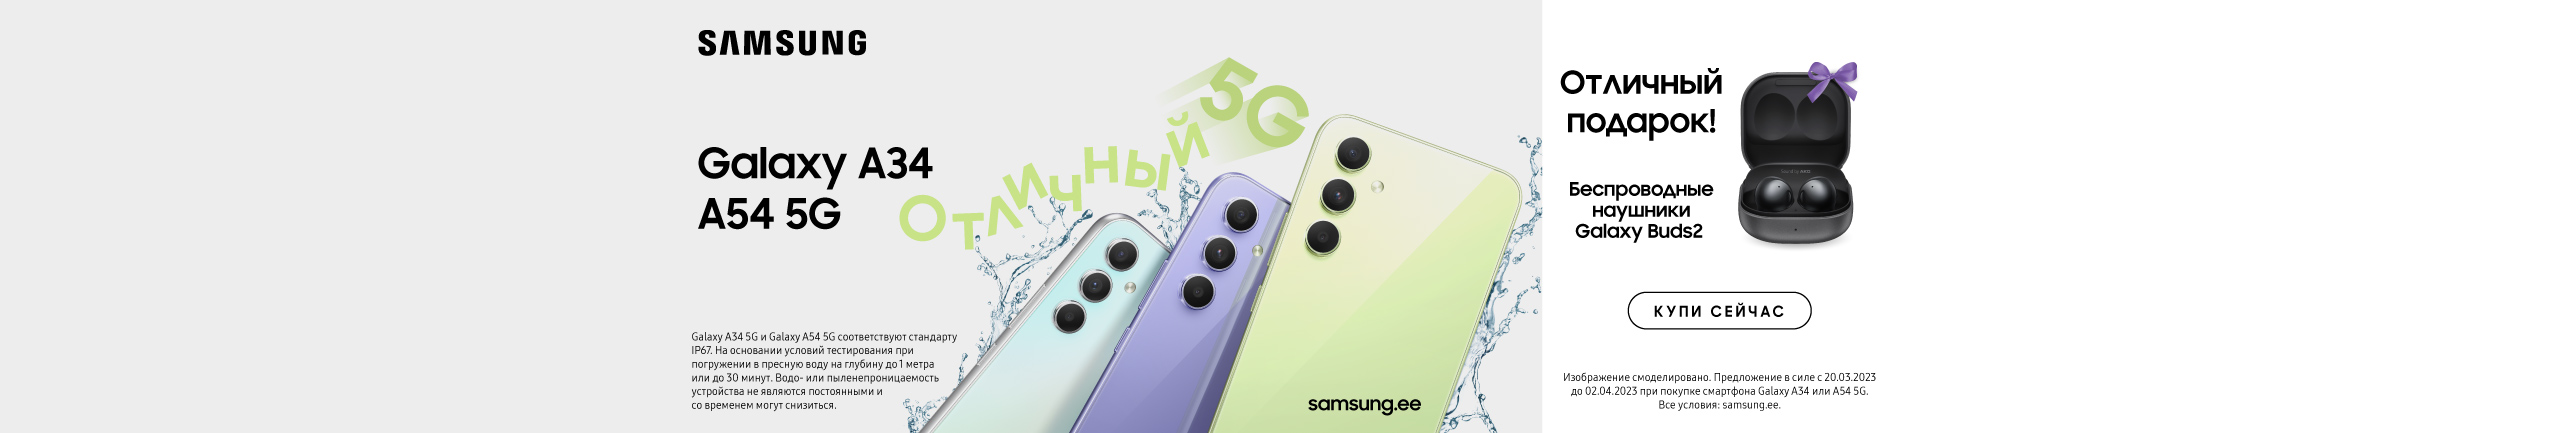 При покупке смартфона Samsung Galaxy A34 или A54 5G Вы получите в подарок наушники Galaxy Buds 2!